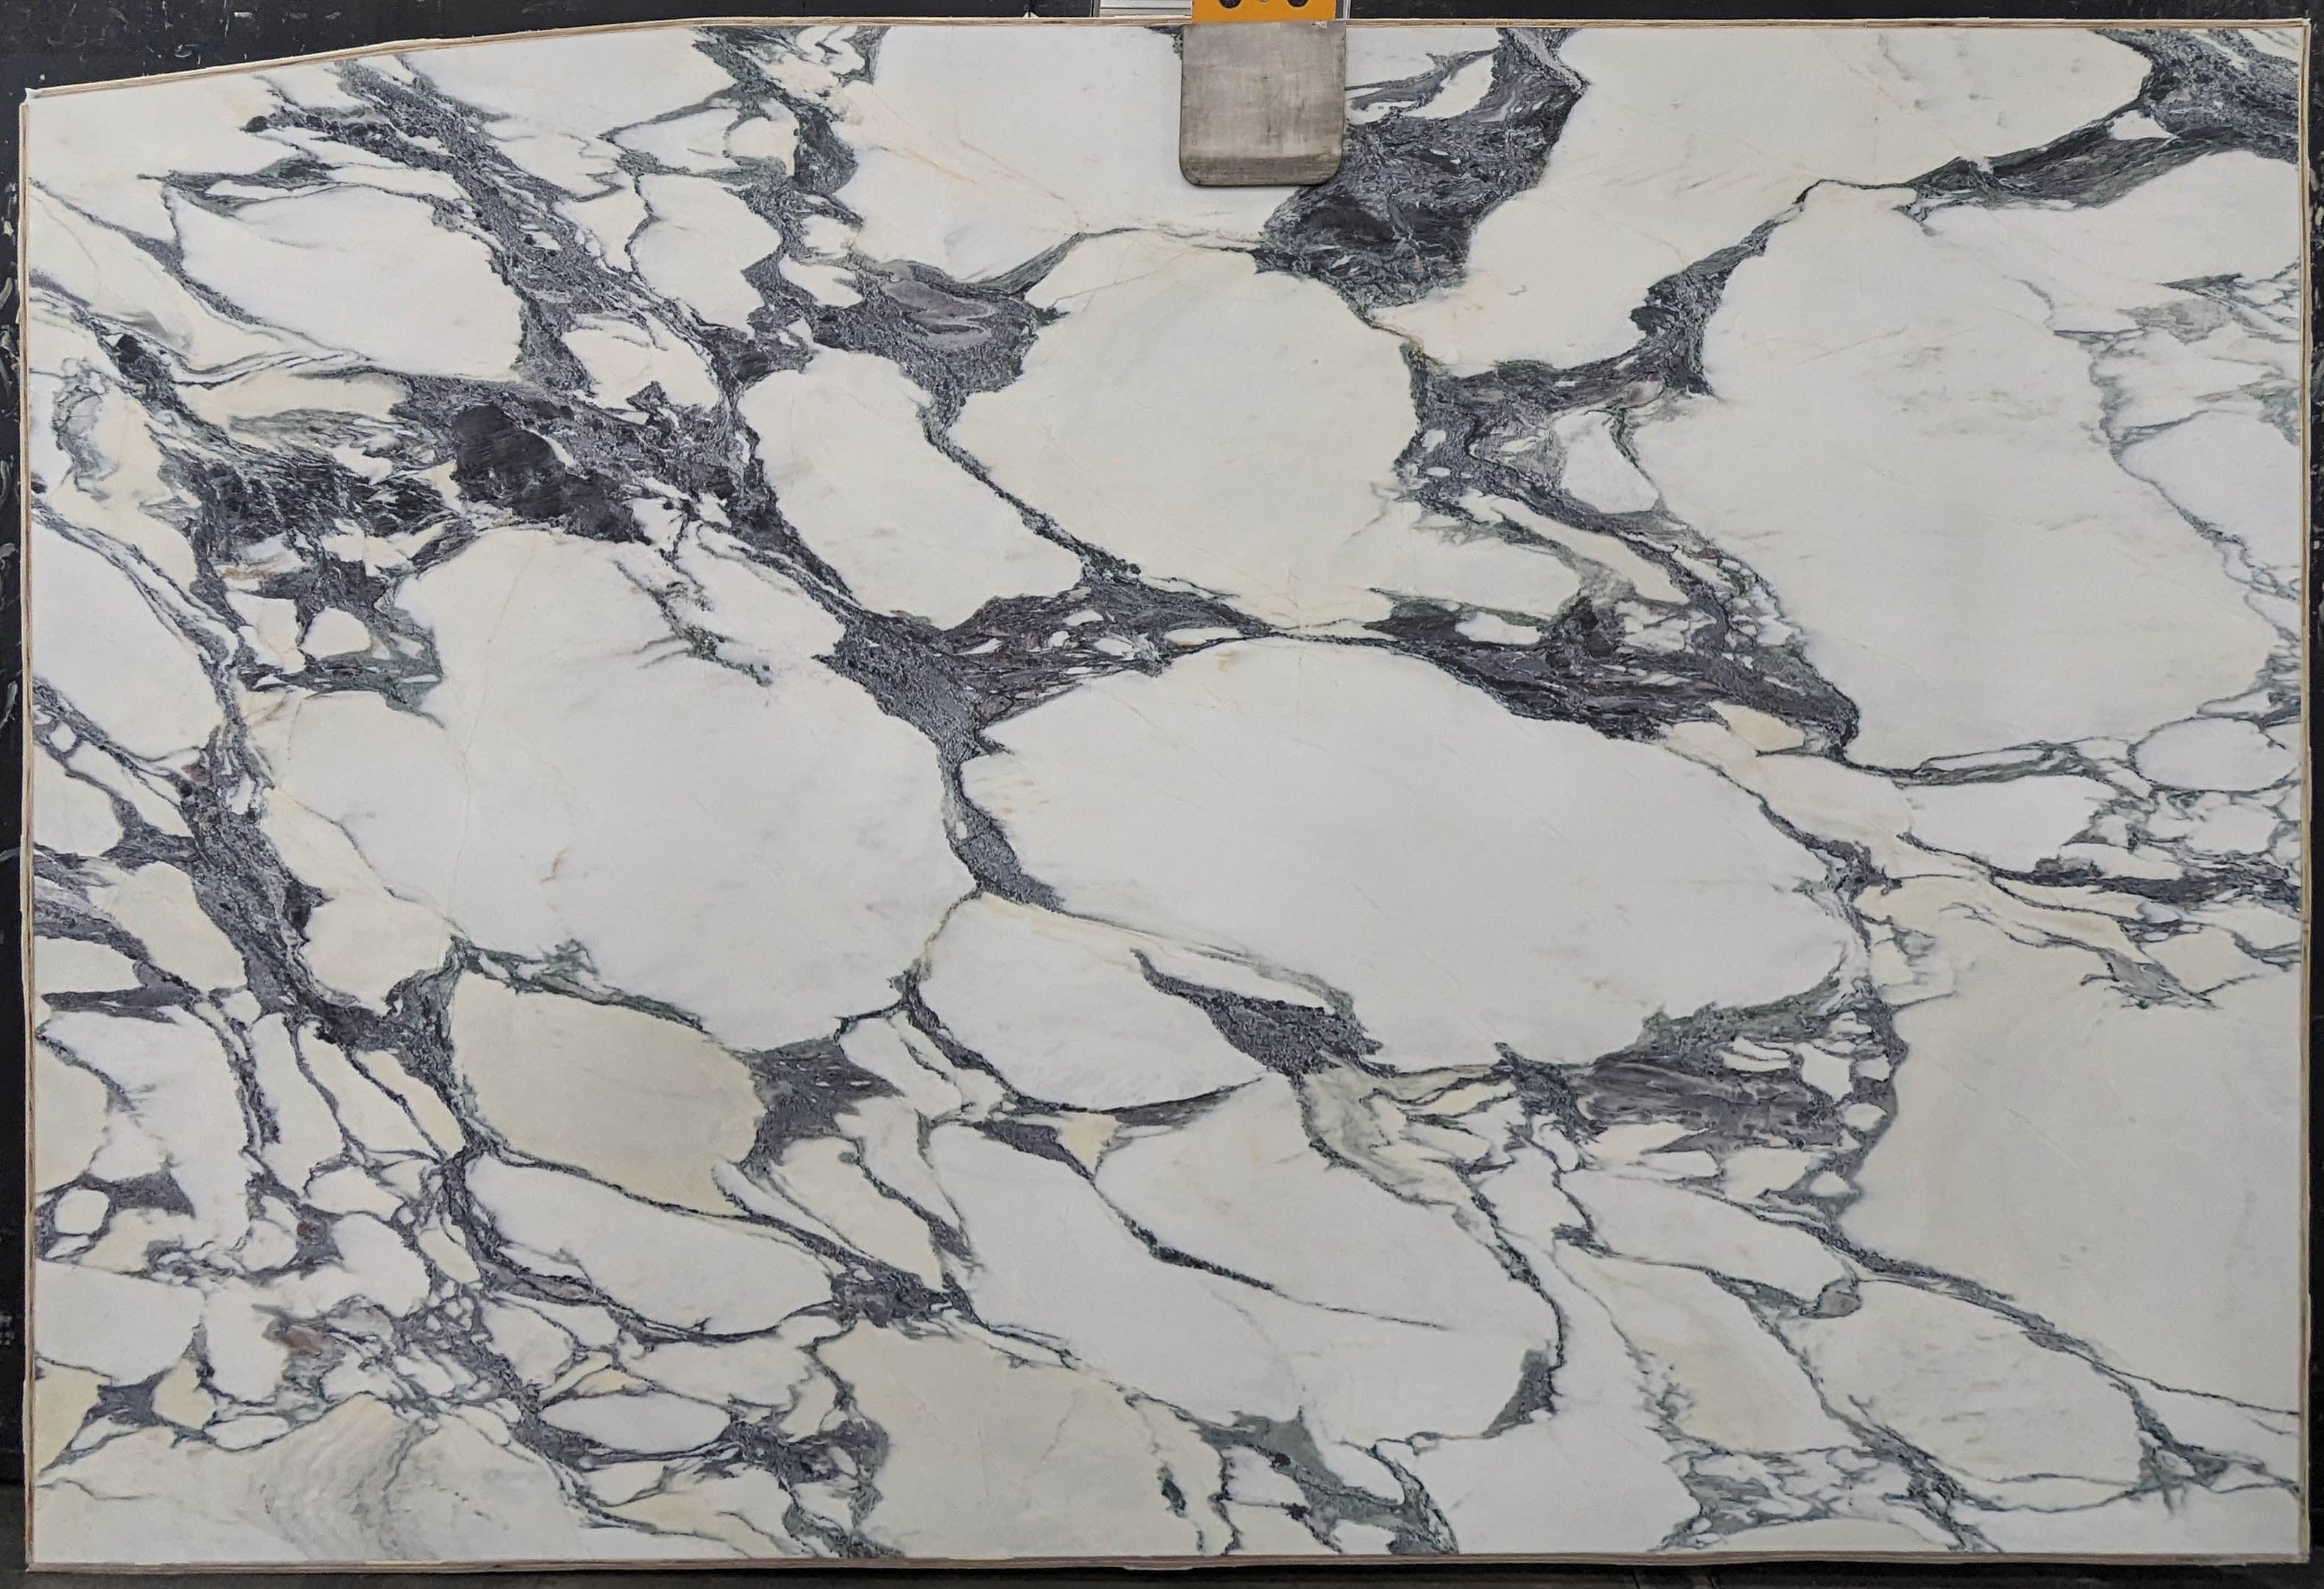  Calacatta Viola Marble Slab 3/4 - 13737A#54 -  74x116 